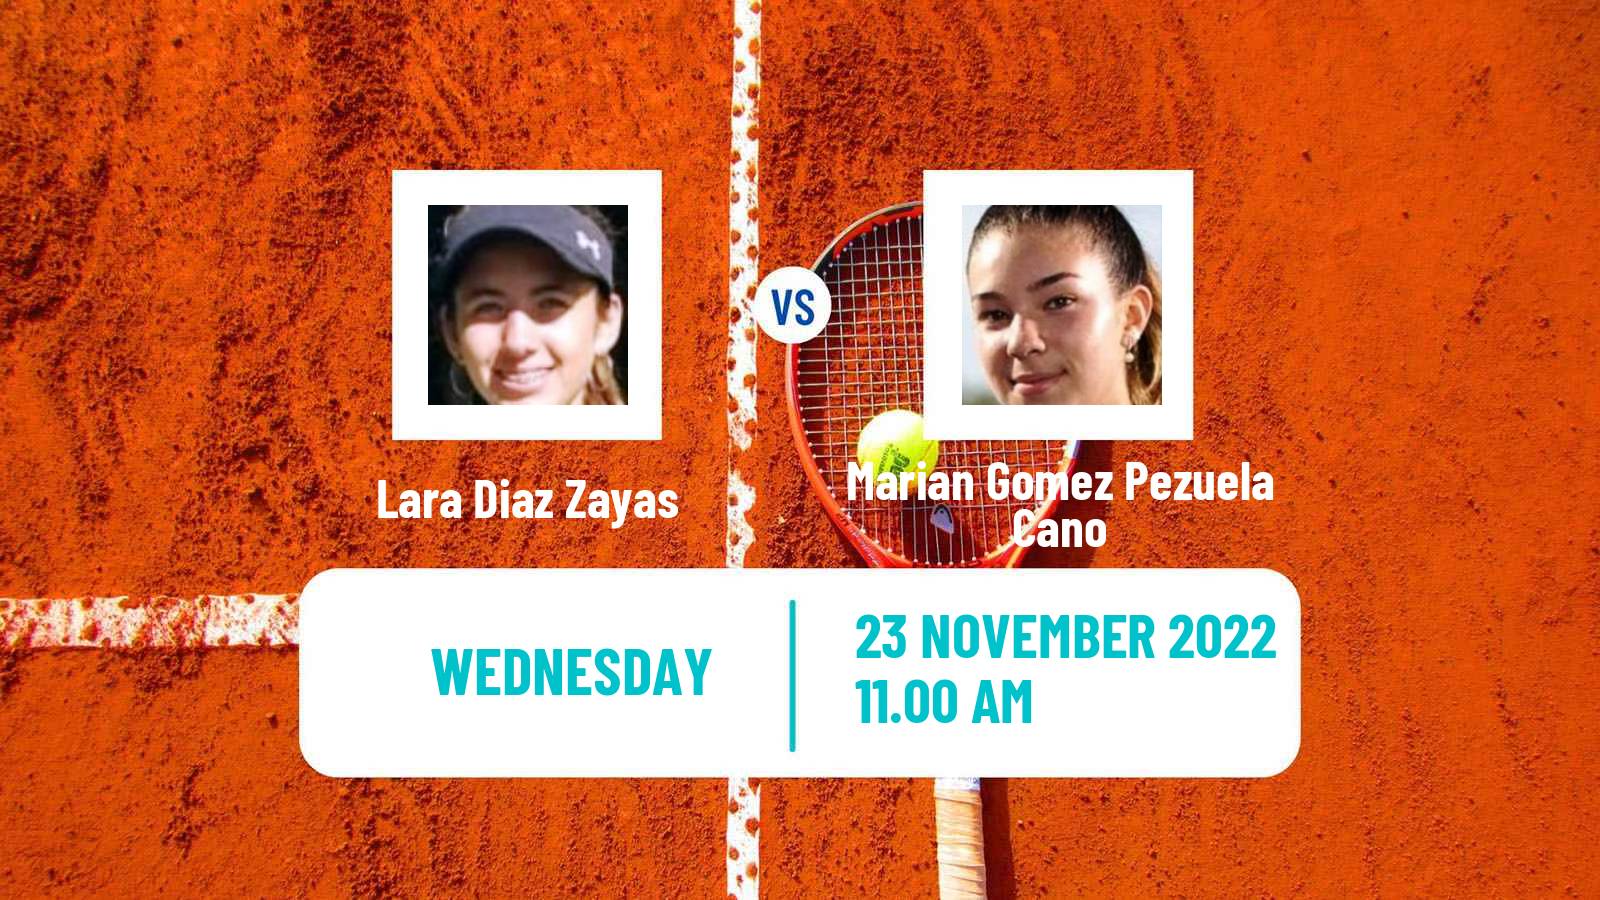 Tennis ITF Tournaments Lara Diaz Zayas - Marian Gomez Pezuela Cano